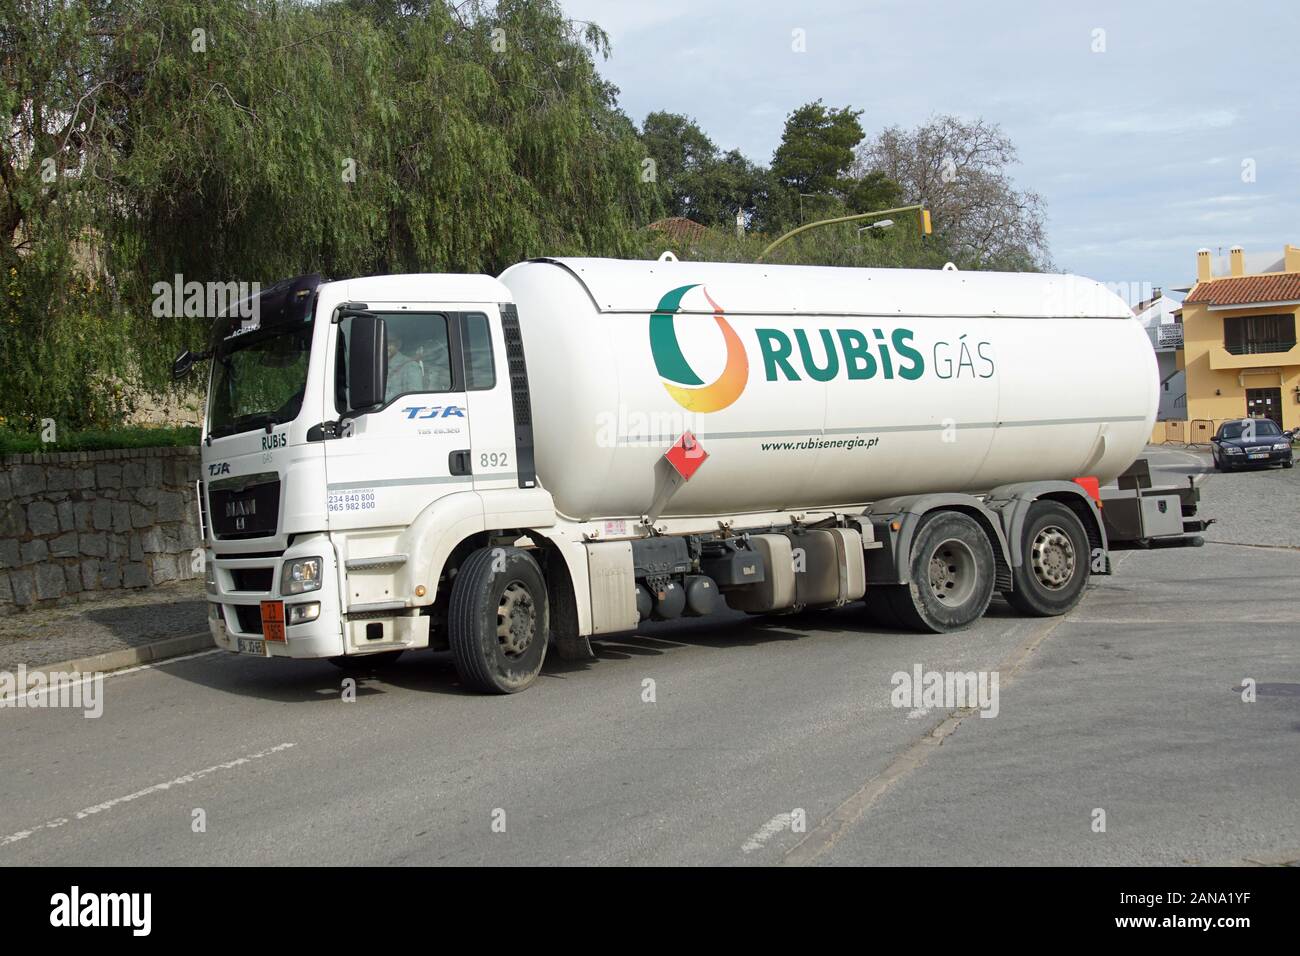 Albufeira, Portogallo - 26 dicembre 2019: Bianco Rubis combustibile gassoso autocisterna. Foto Stock